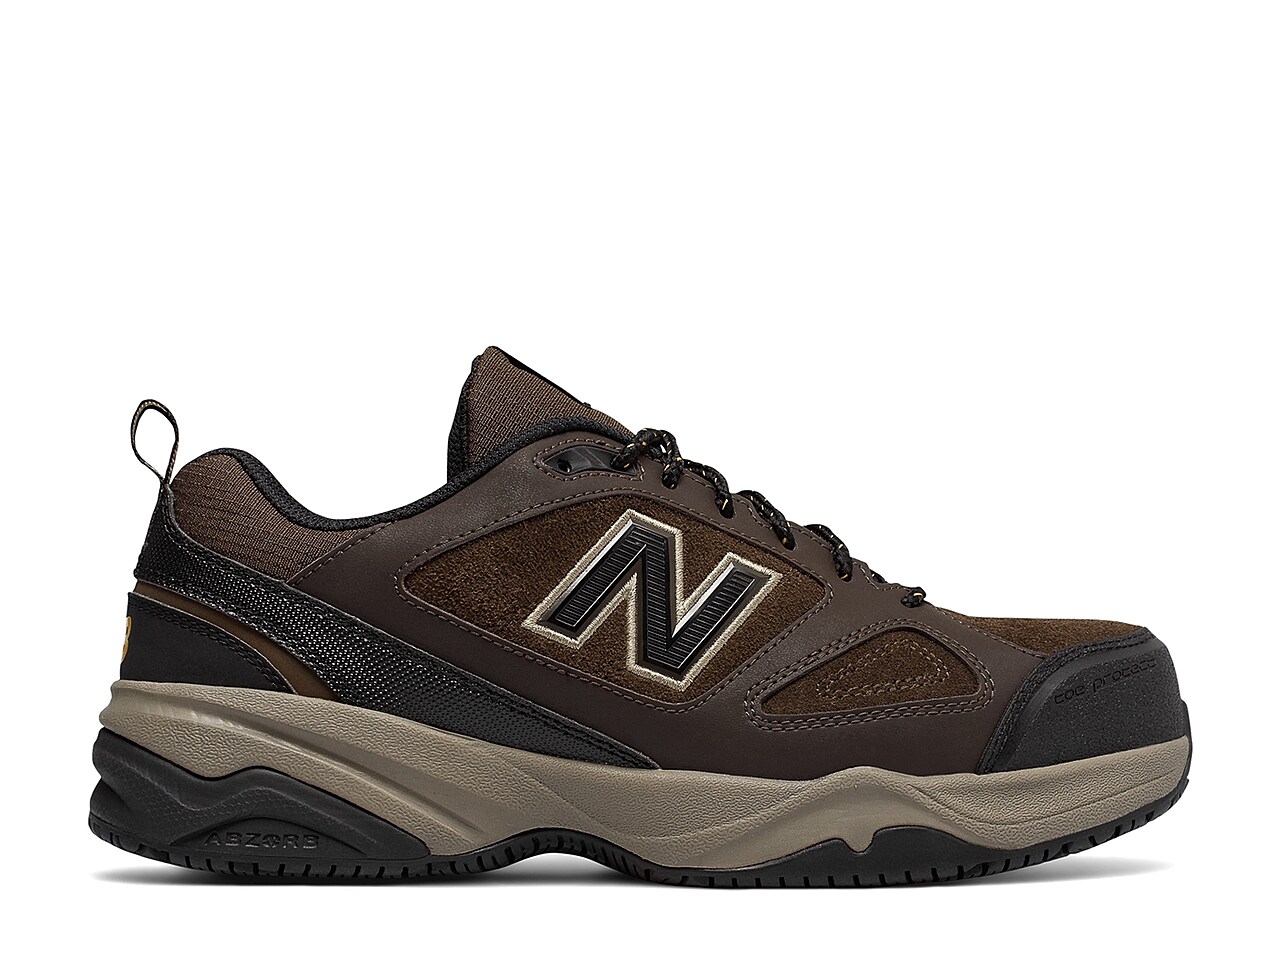 New Balance 627 v2 Steel Toe Work Shoe - Men's